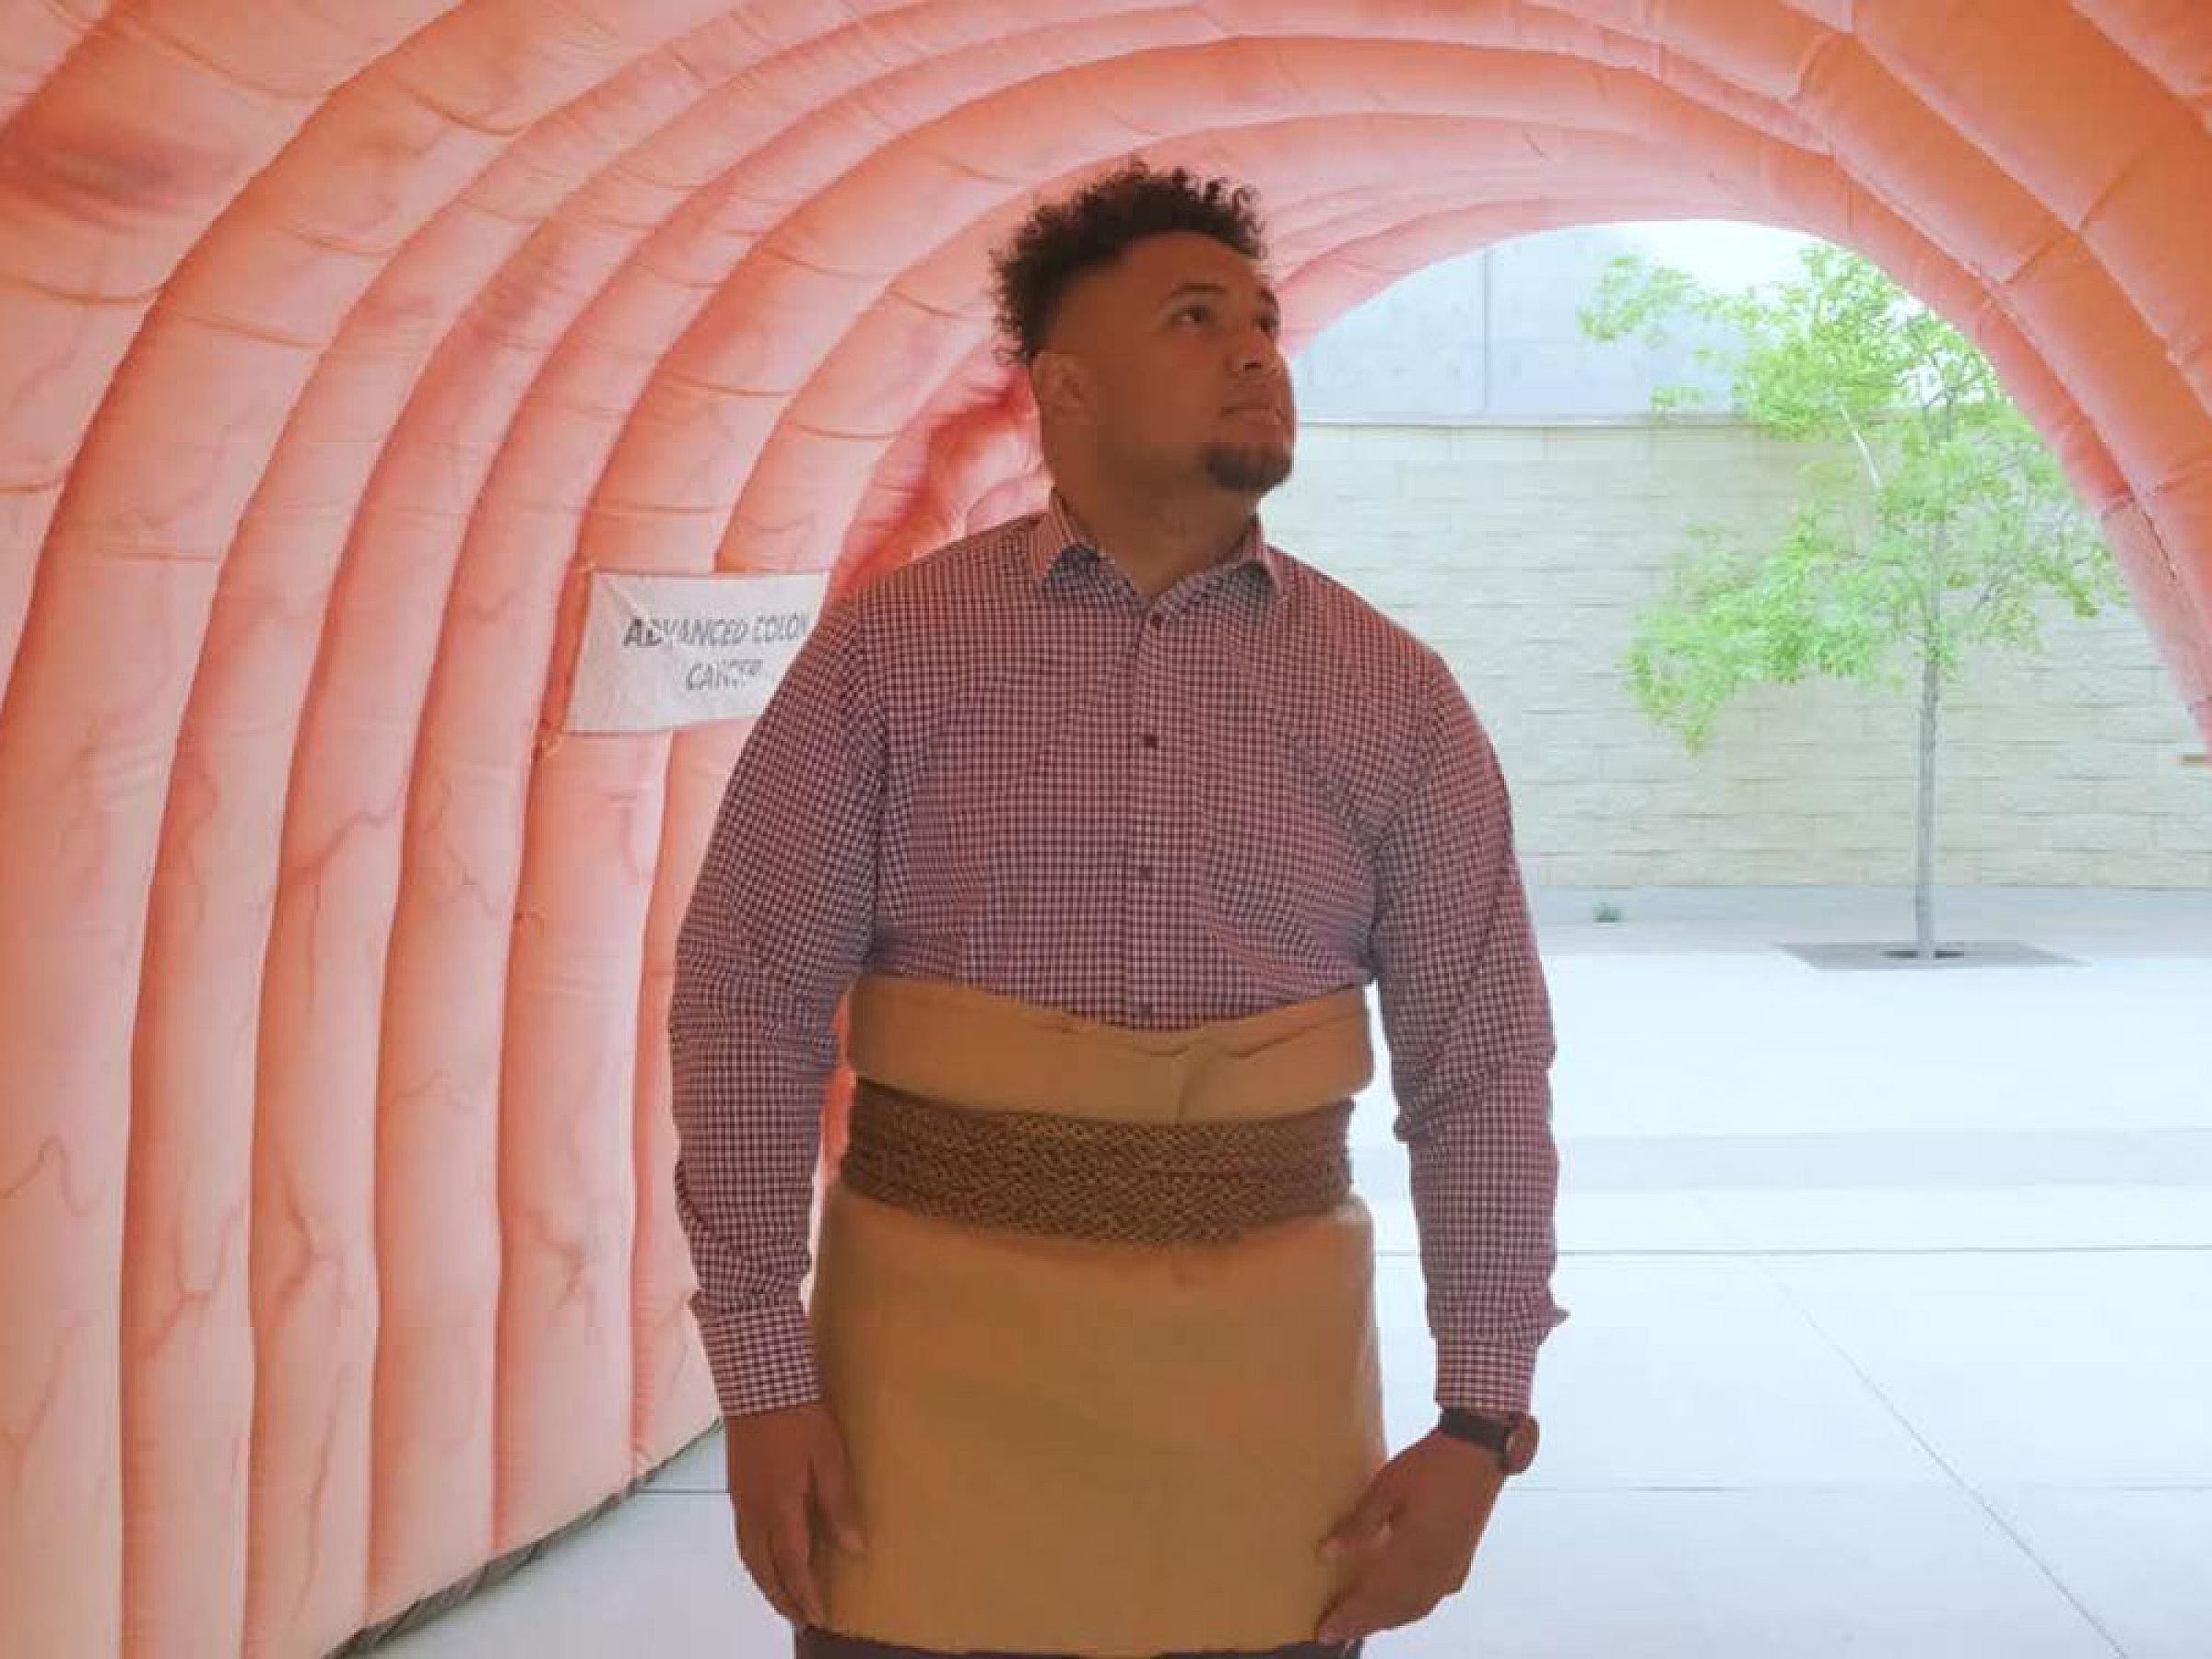 Will Satini wearing Maori skirt walking through colorectal exhibit